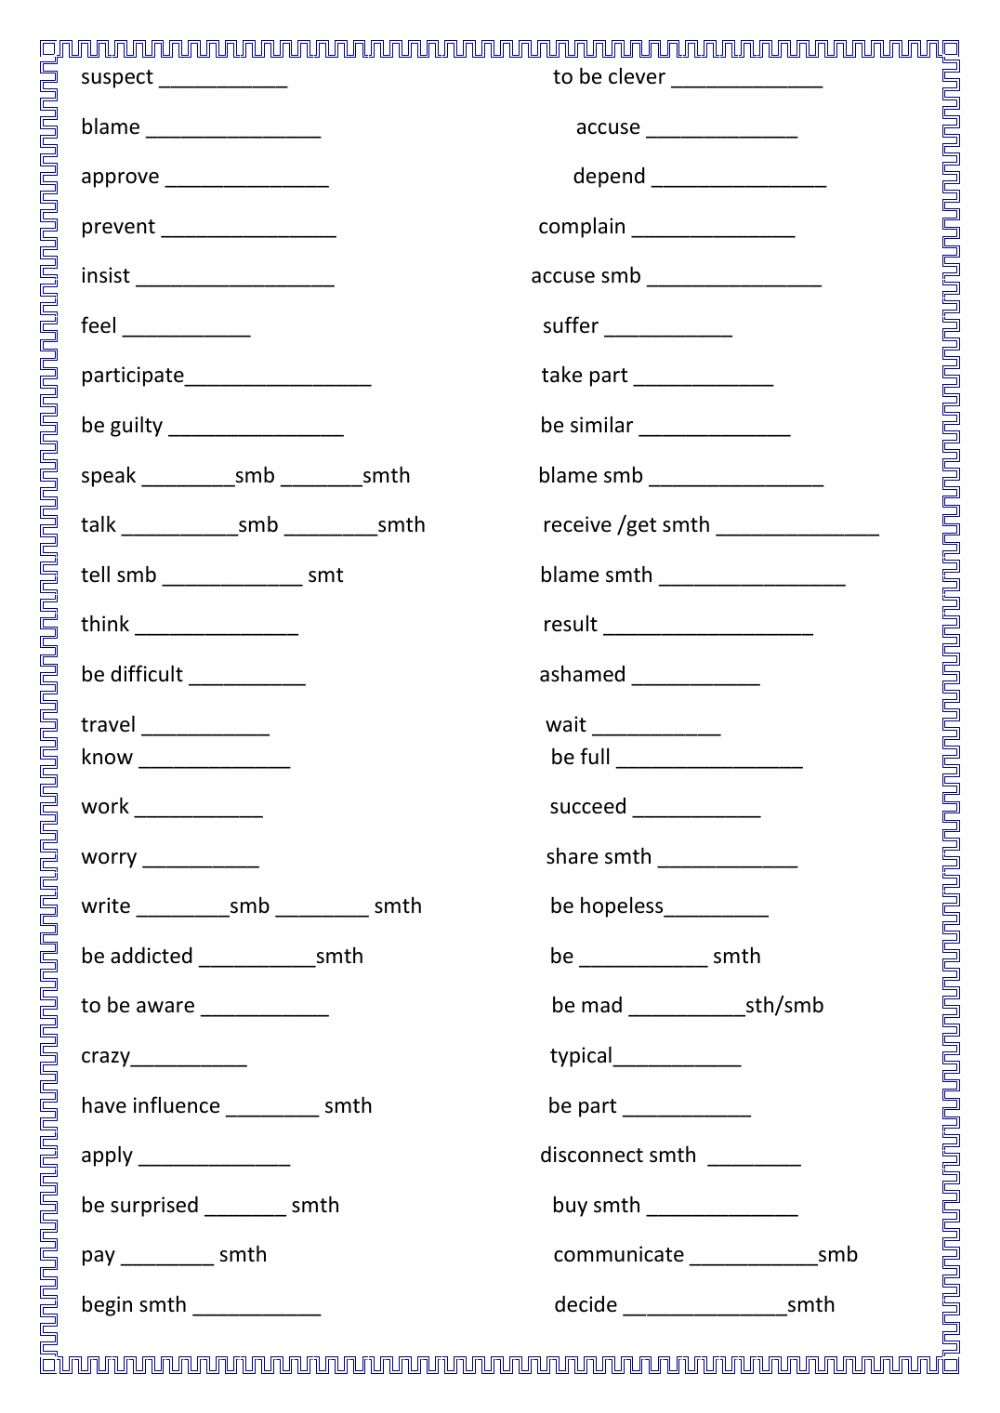 prepositions-after-nouns-adjectives-verbs-worksheet-adverbworksheets